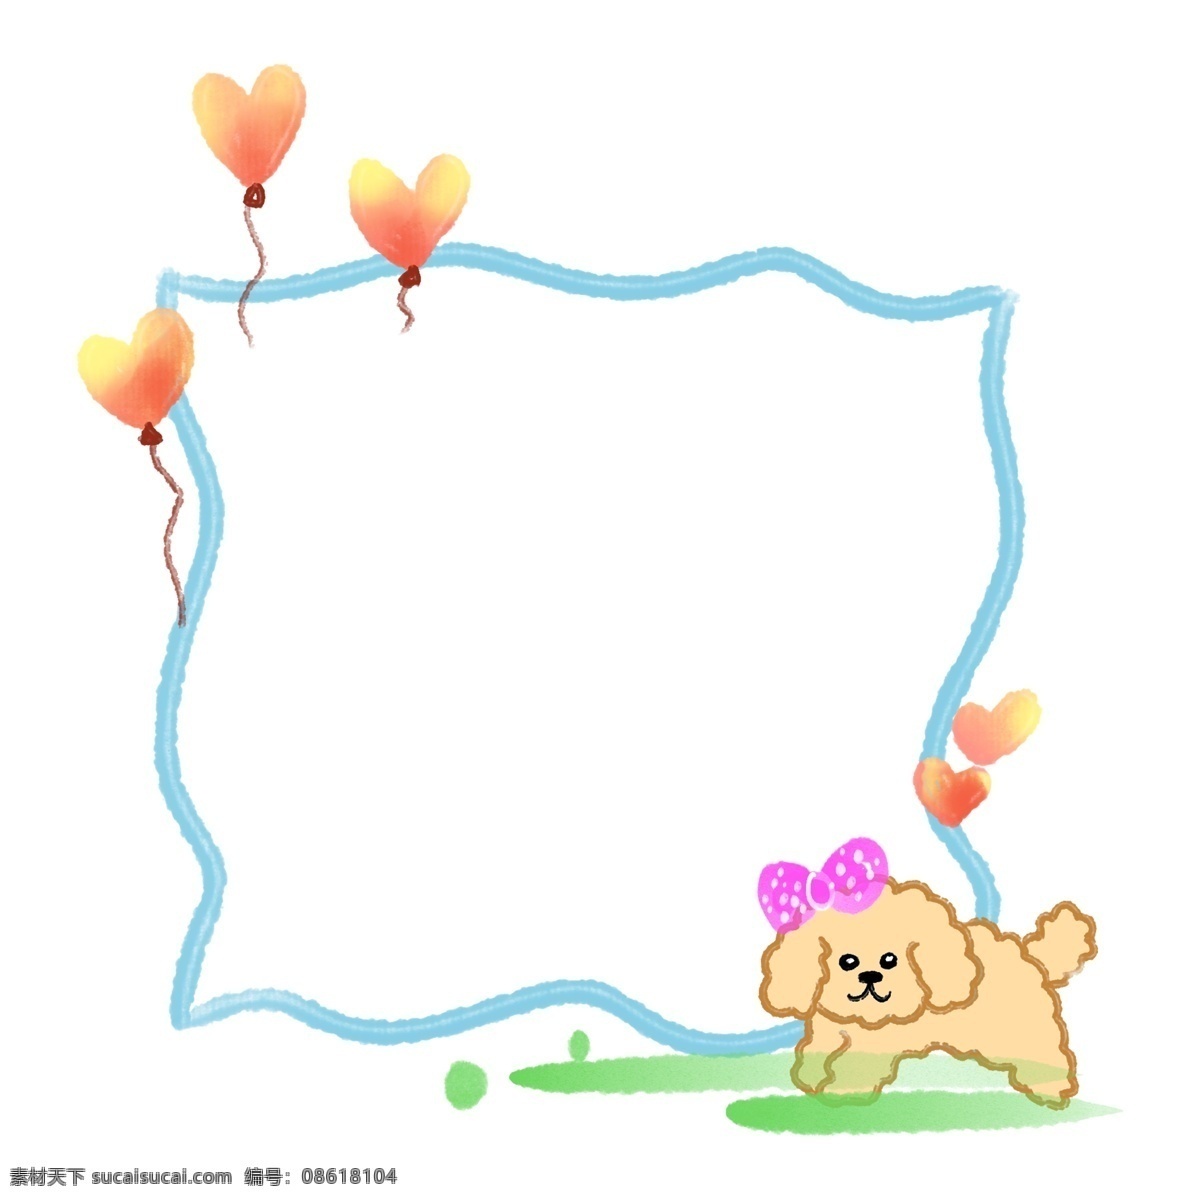 气球 小狗 边框 插画 气球边框 小狗边框 可爱的边框 动物边框 创意边框 蝴蝶结装饰 卡通边框